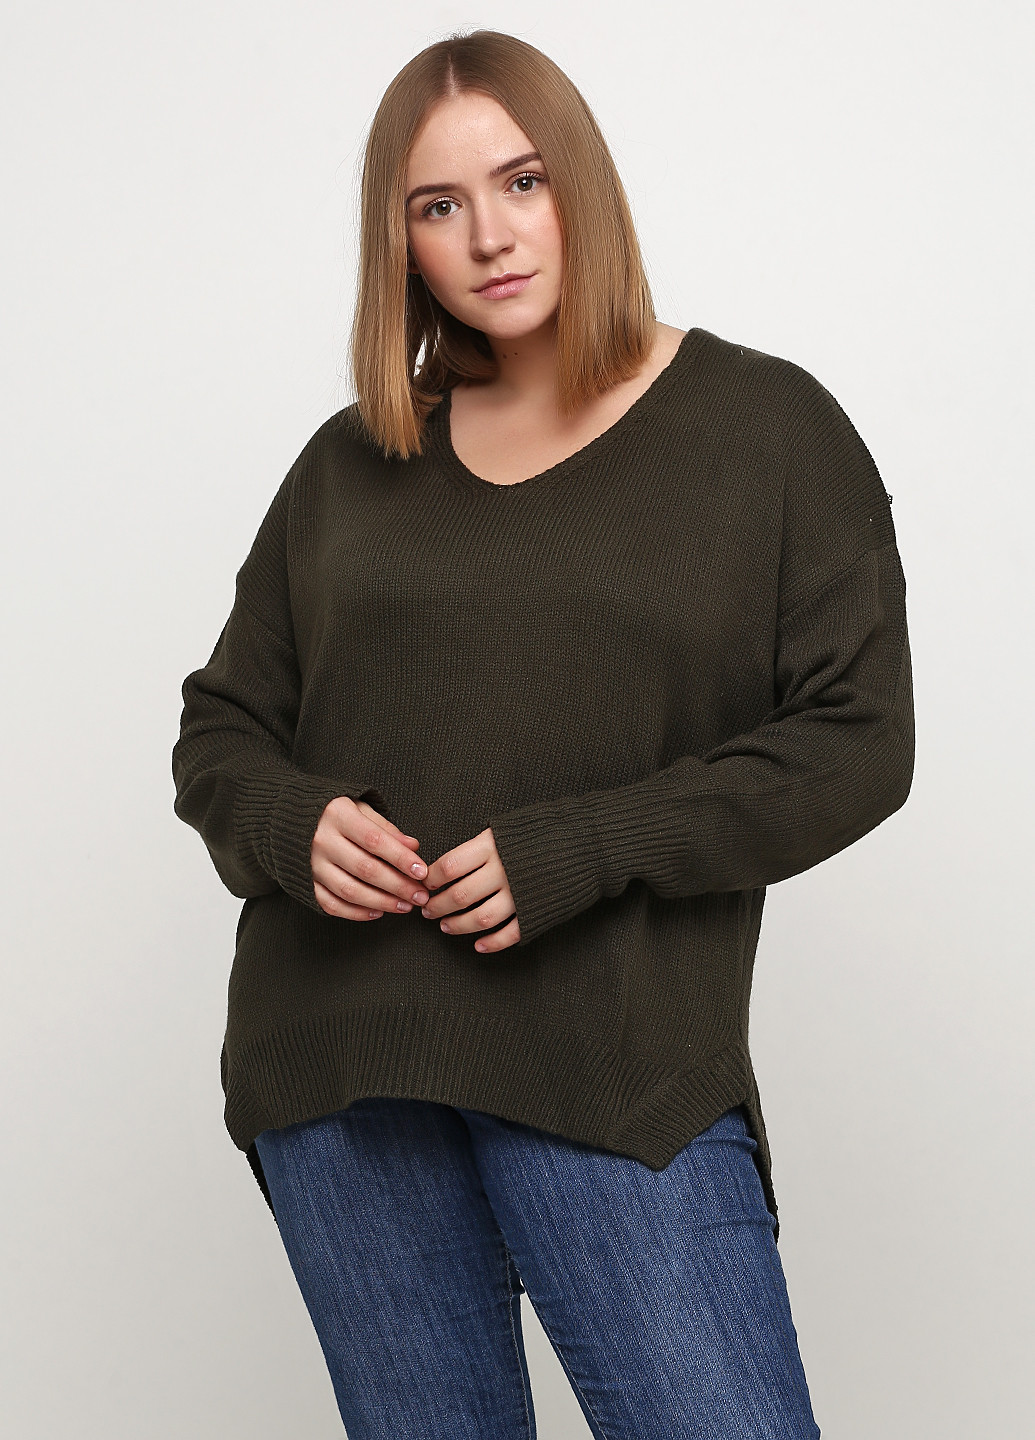 Оливковый (хаки) демисезонный пуловер пуловер CHD